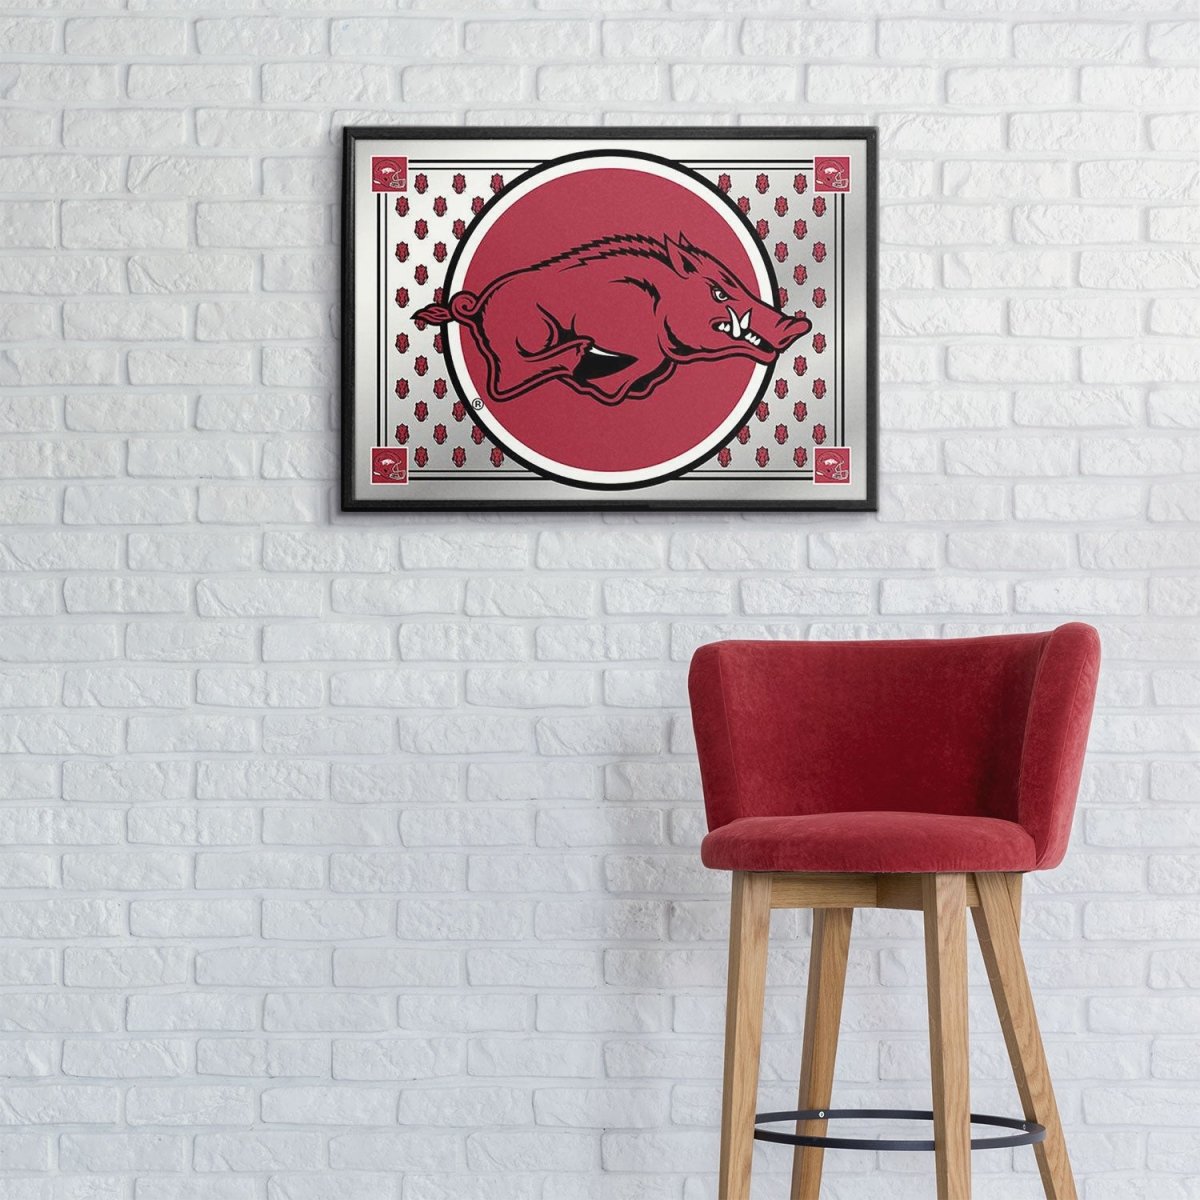 Arkansas Razorbacks: Mascot, Team Spirit Framed Mirrored Wall Sign - The Fan-Brand